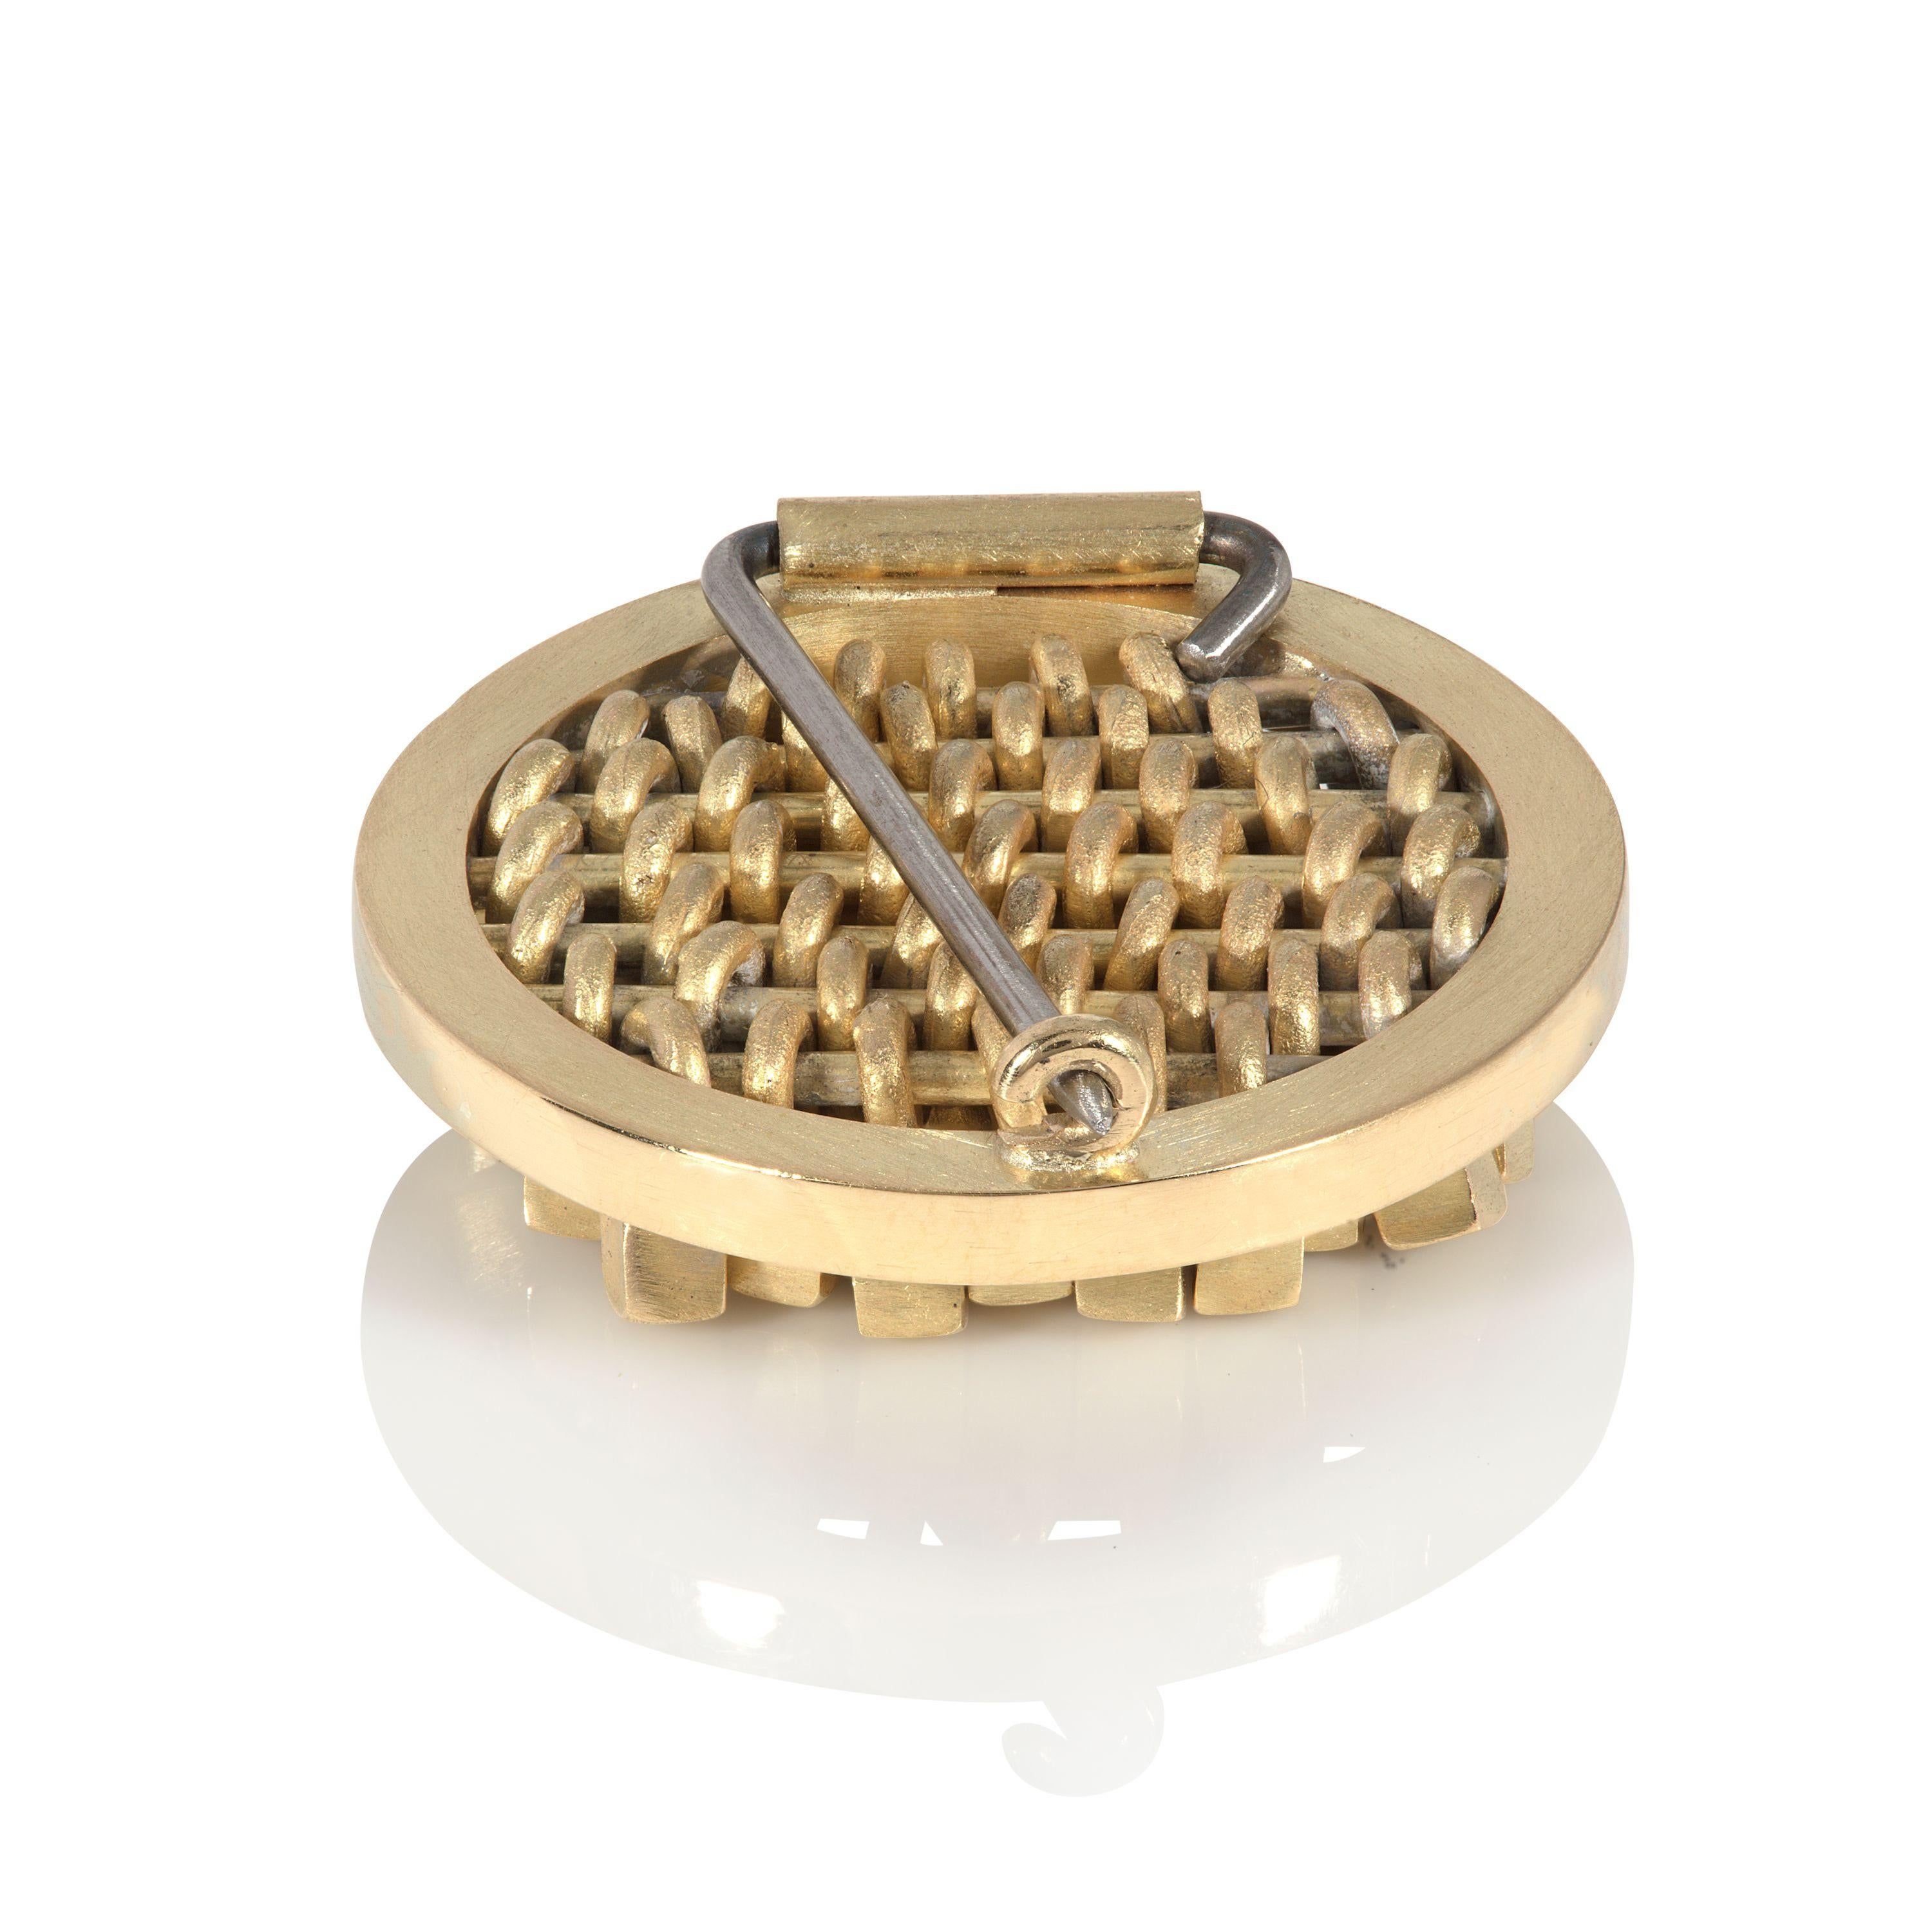 Cette broche élégante et frappante en or 18 carats est conçue et fabriquée par la bijoutière britannique Sarah Pulvertaft. Dans son cadre circulaire simple, la broche entière est composée de mini-cubes individuels. Ces cubes mobiles, qui captent